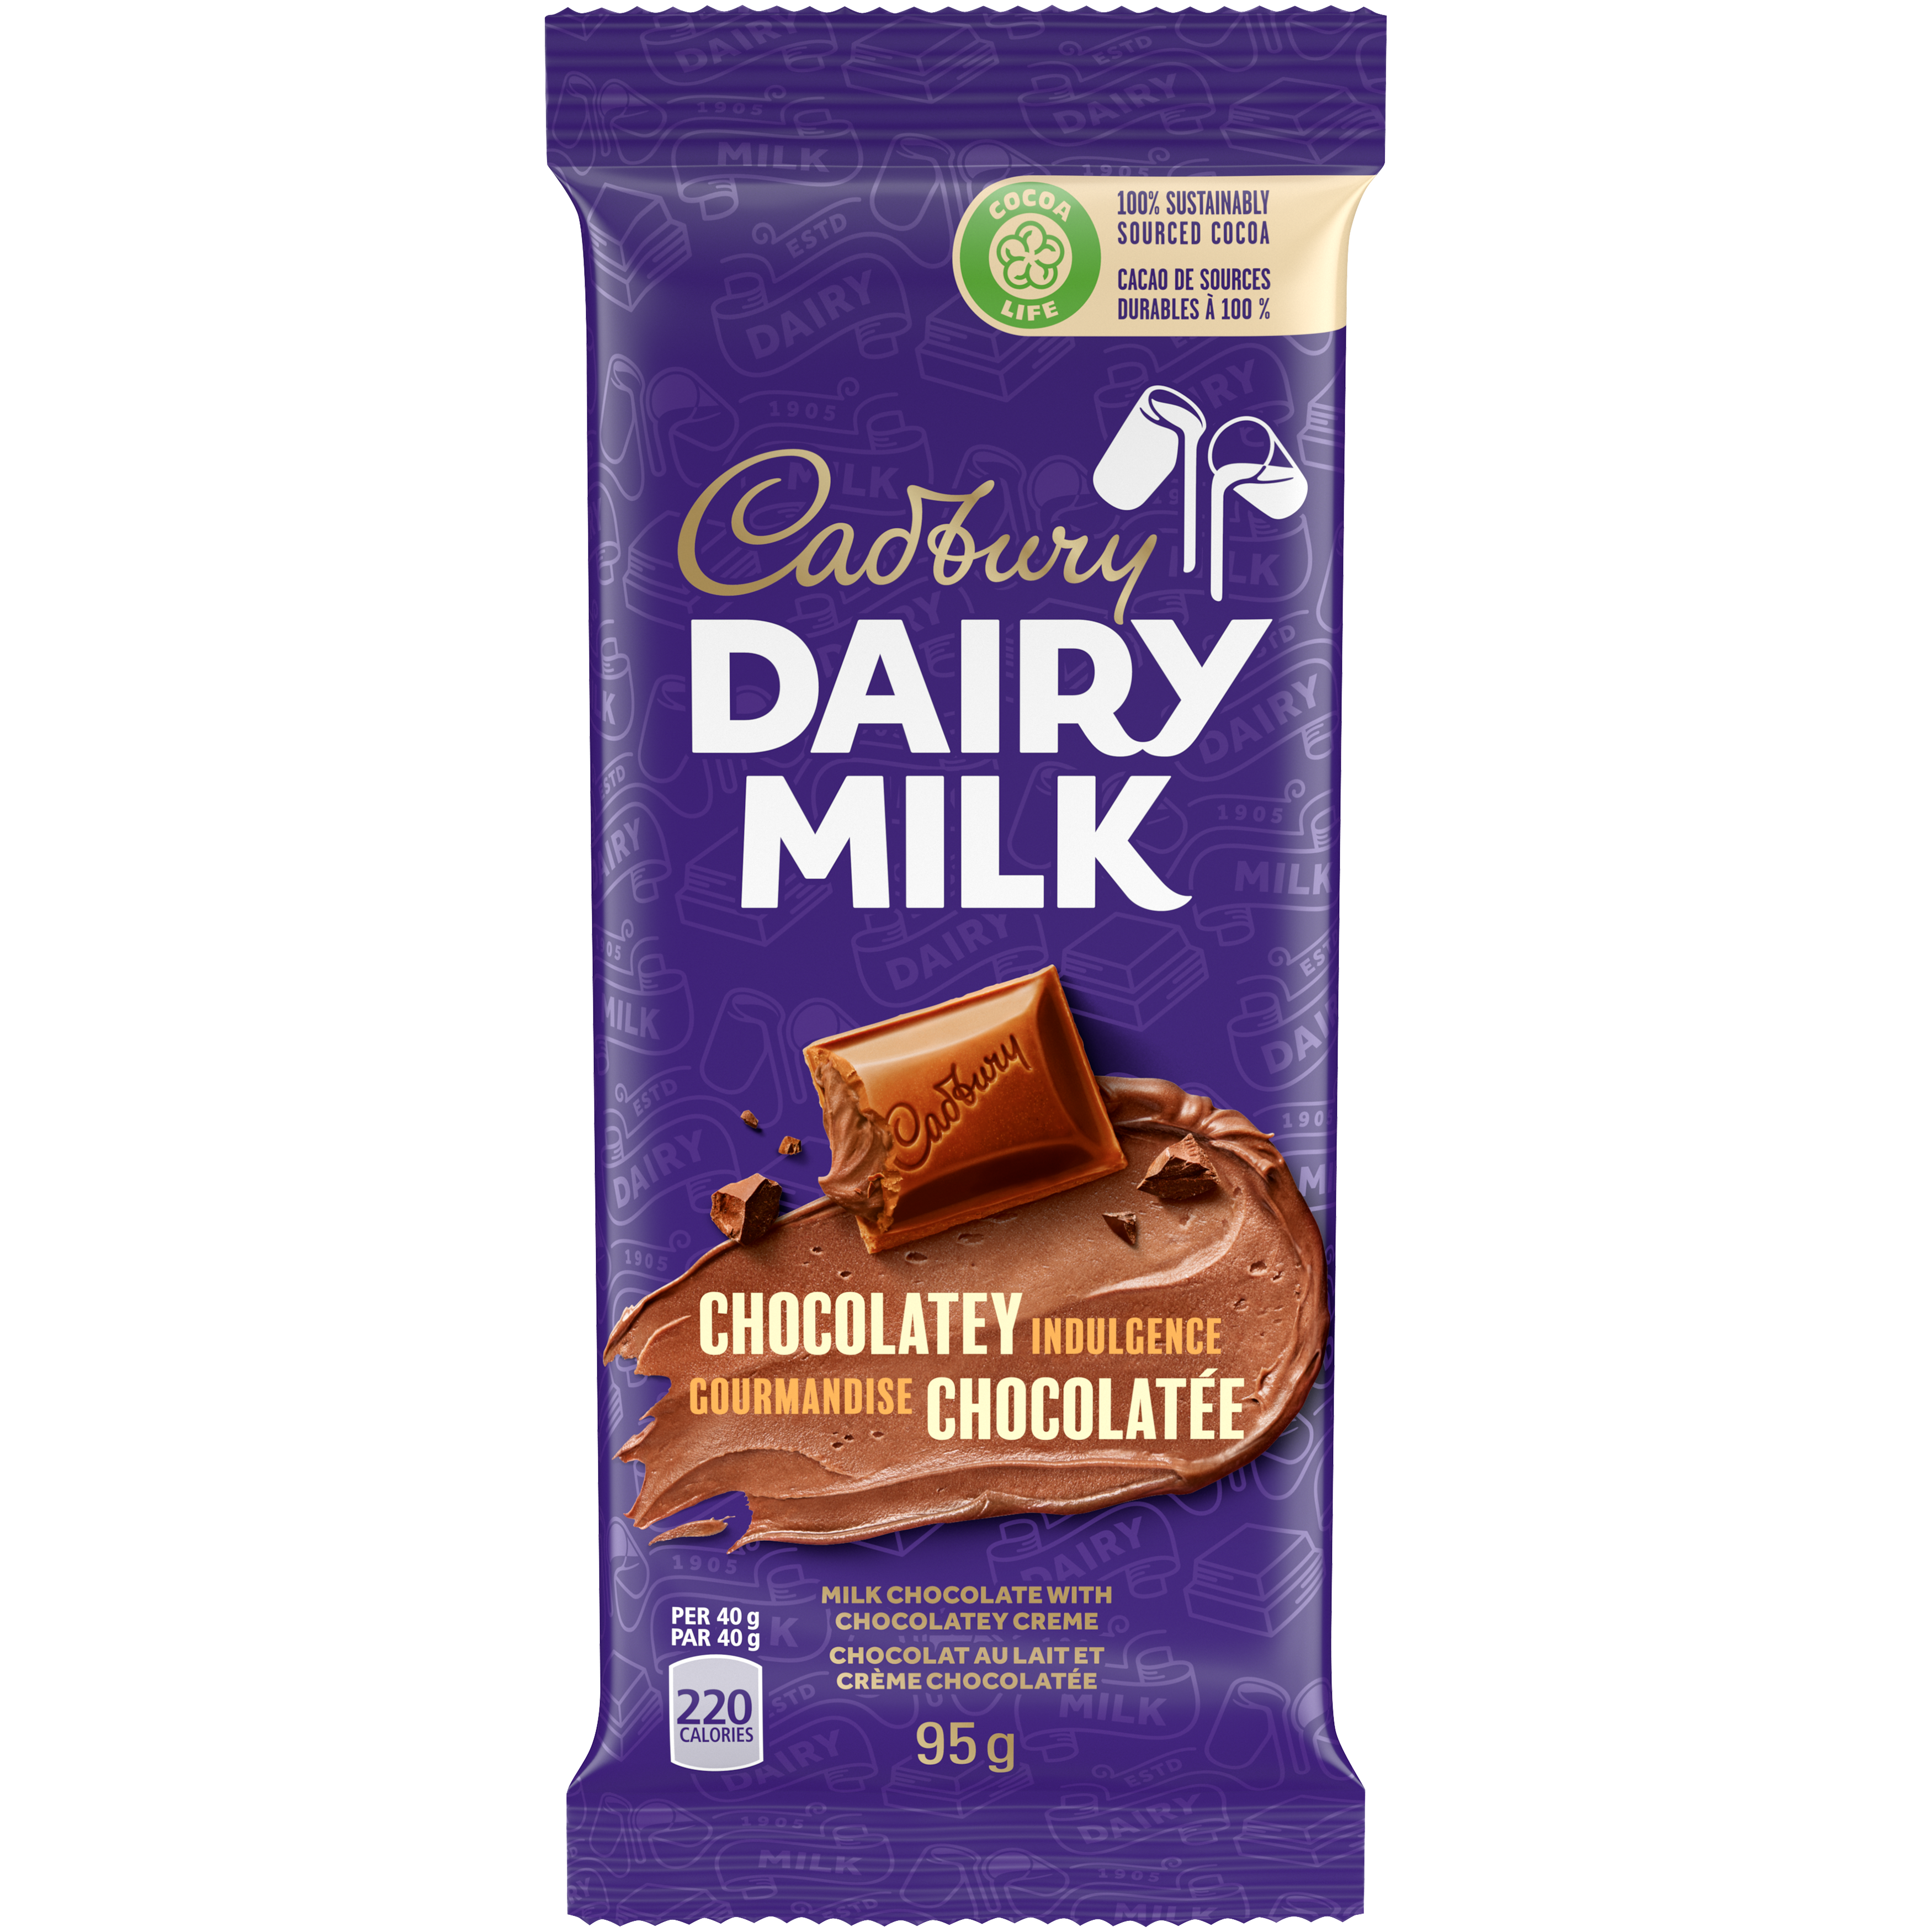 Cadbury Dairy Milk Chocolatey Indulgence Chocolate Bars, 95 G-2